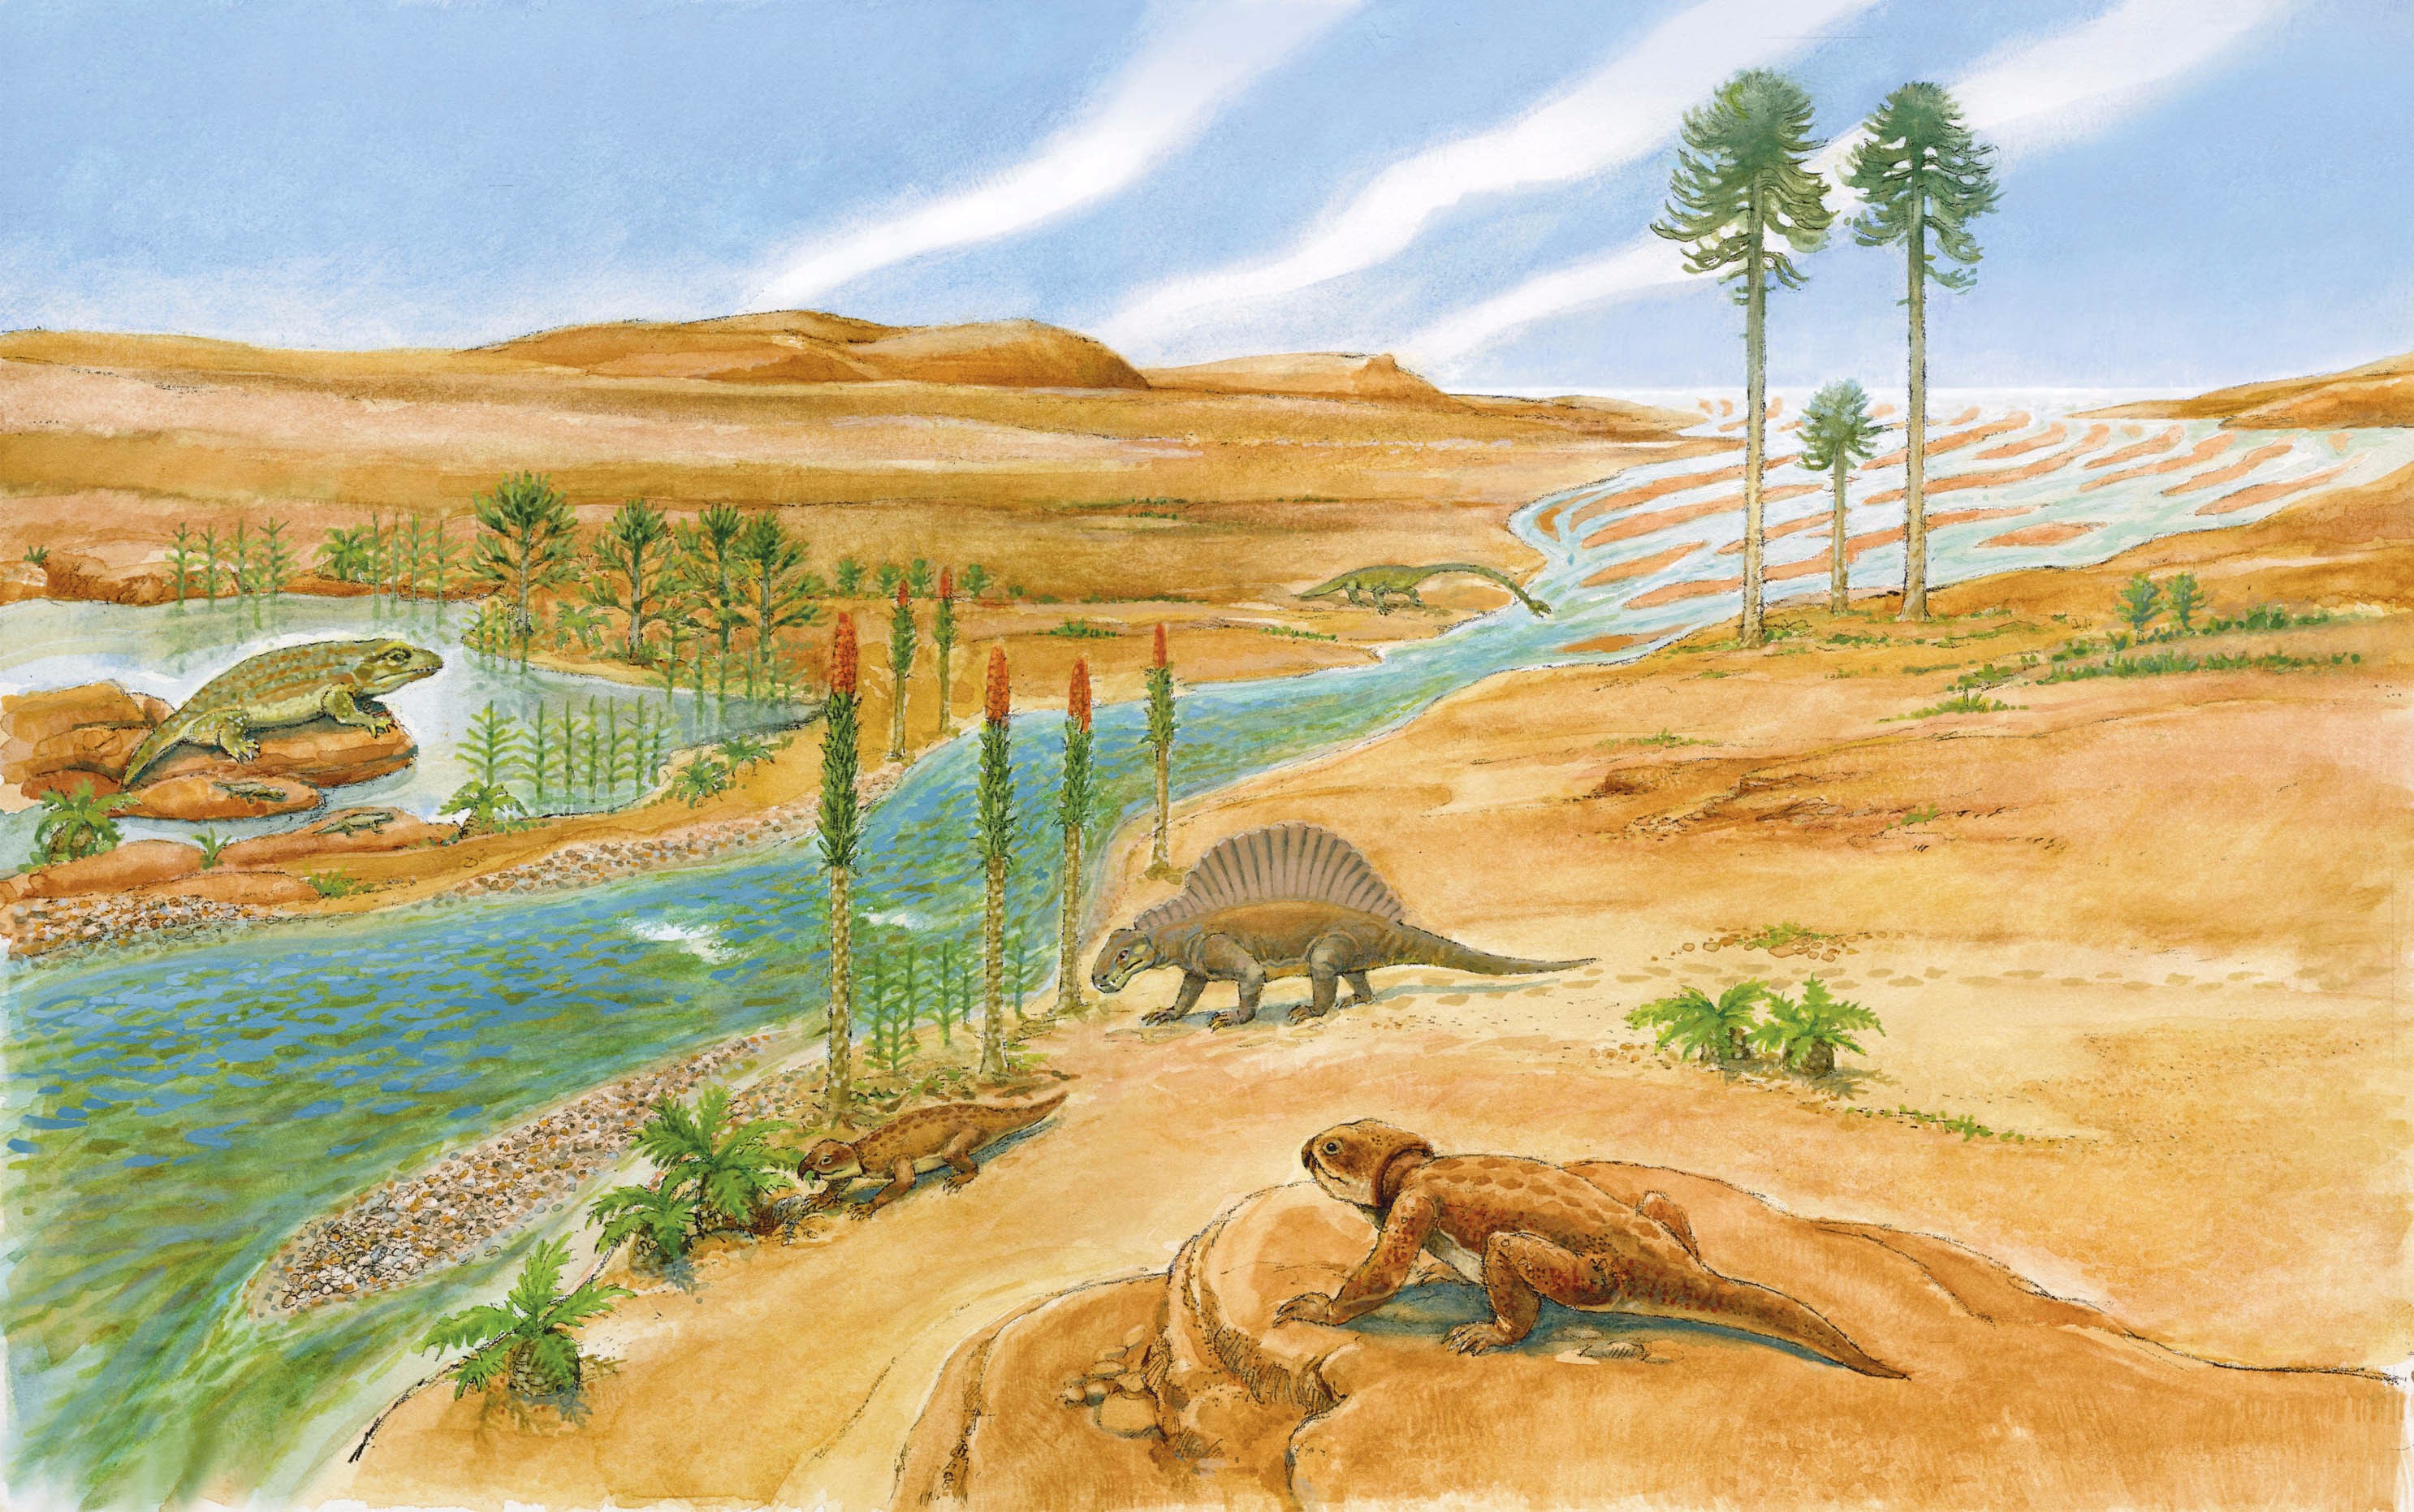 100 млн лет назад какая эра. Триасовый период мезозойской эры. Мезозойская Эра Триас климат. Триасовый период мезозойской эры растительный мир. Триасовый период мезозойской эры климат.